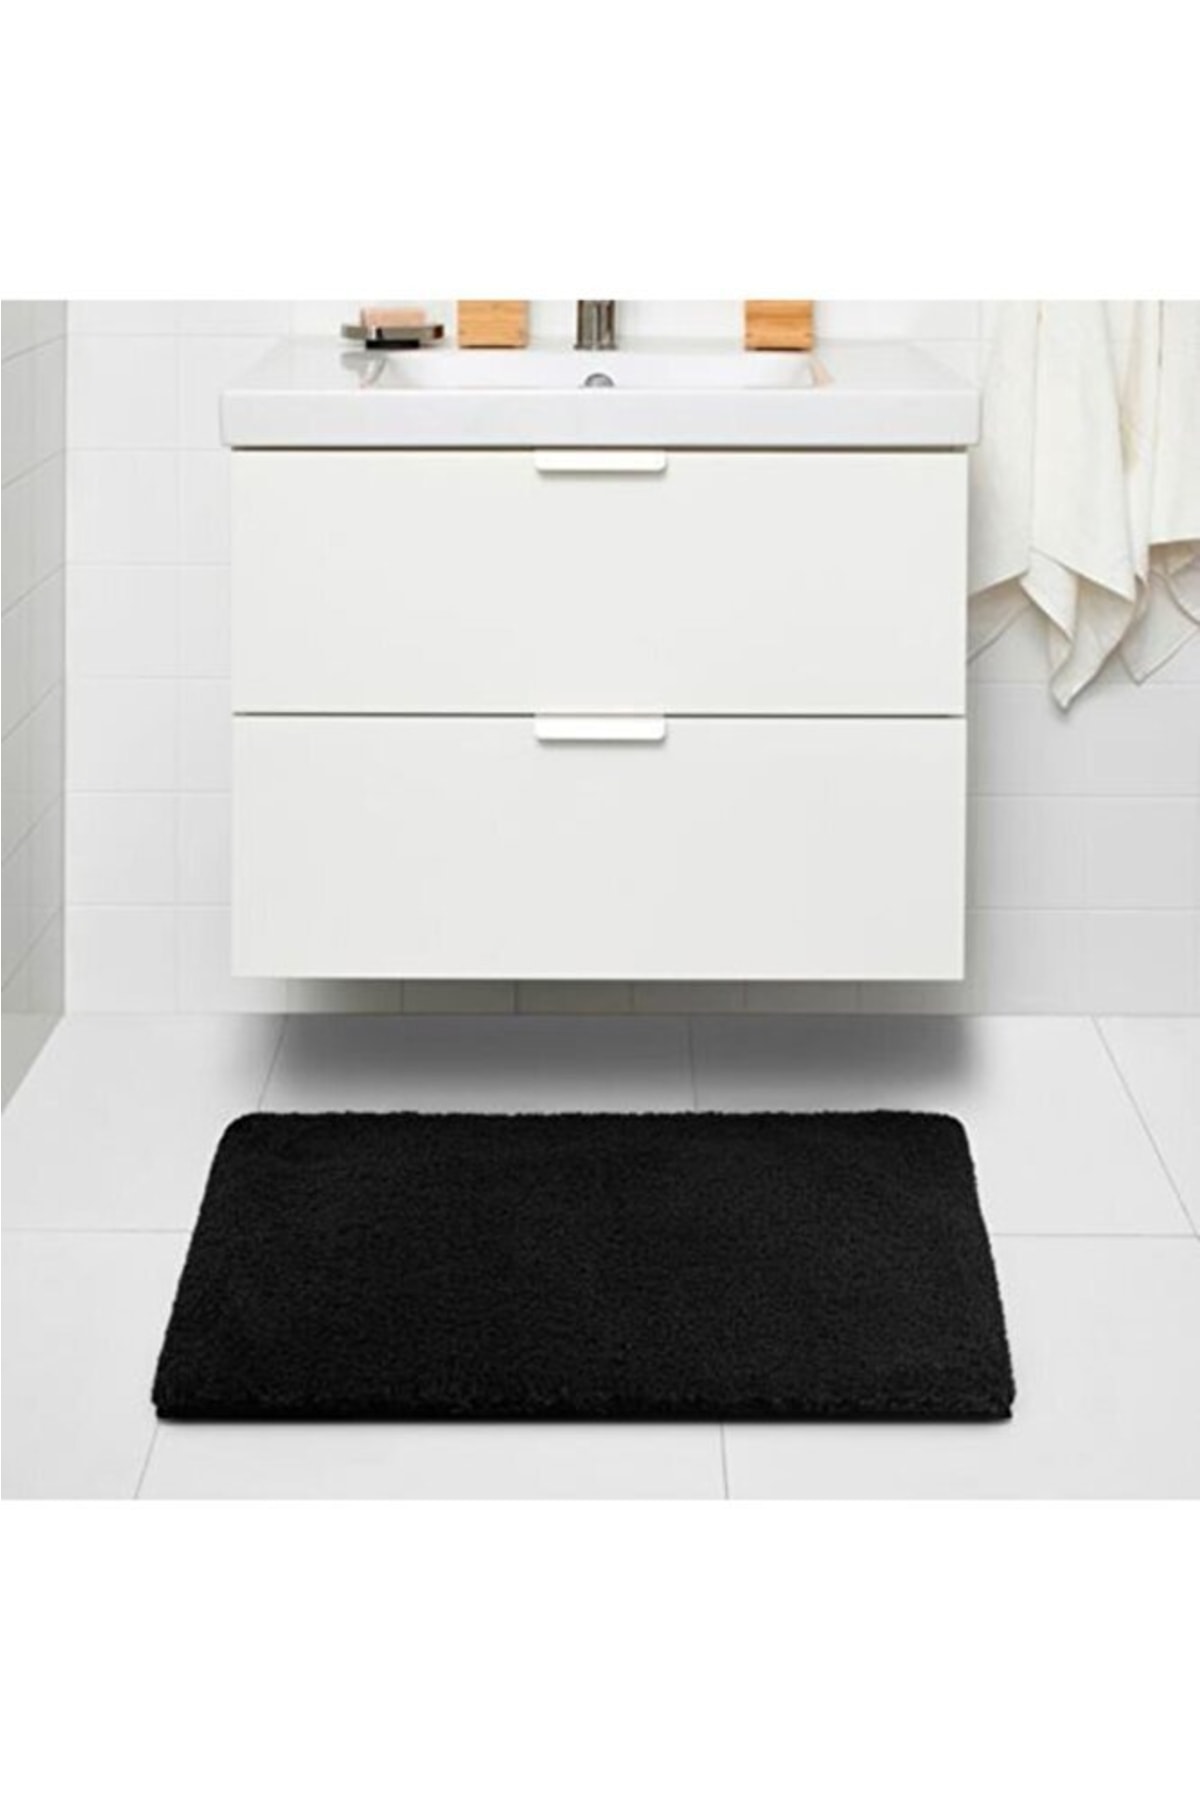 IKEA Banyo Paspası Koyu Gri mikrofiber 60x90 cm Banyo Halısı